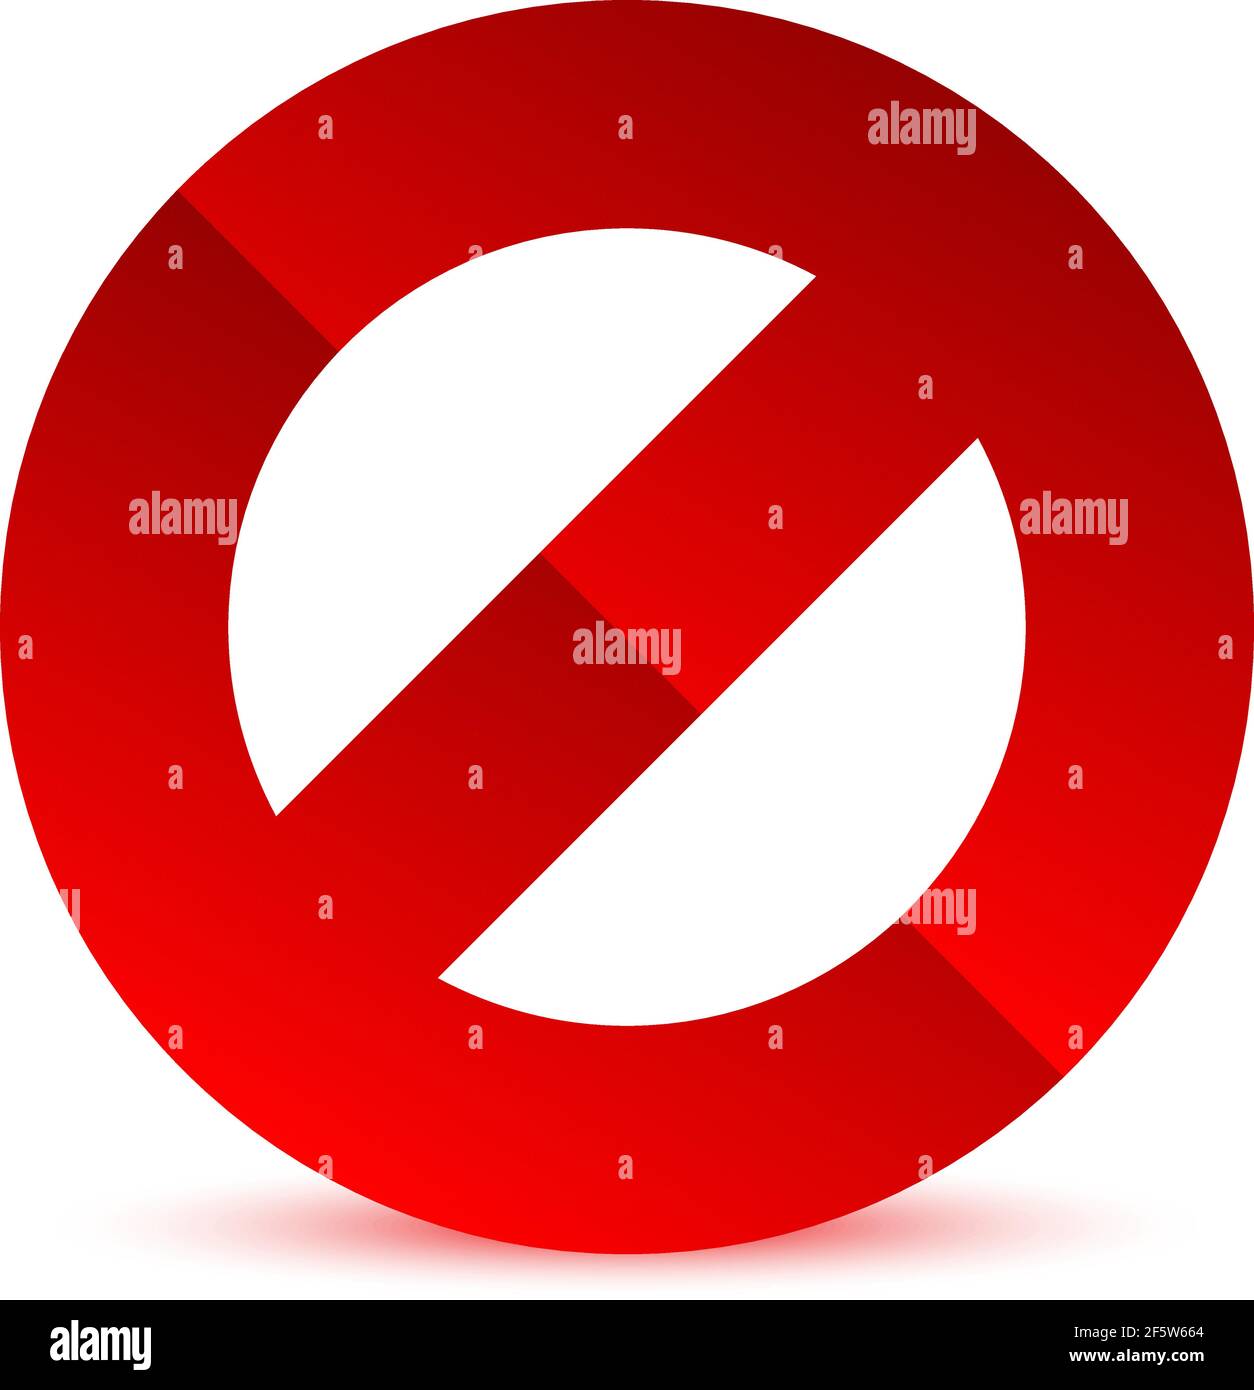 Symbol für Verbot/Beschränkung. Kein Eintrag, kein Eingang, kein Schild eingeben – Vektorgrafik, Clipart-Grafiken Stock Vektor